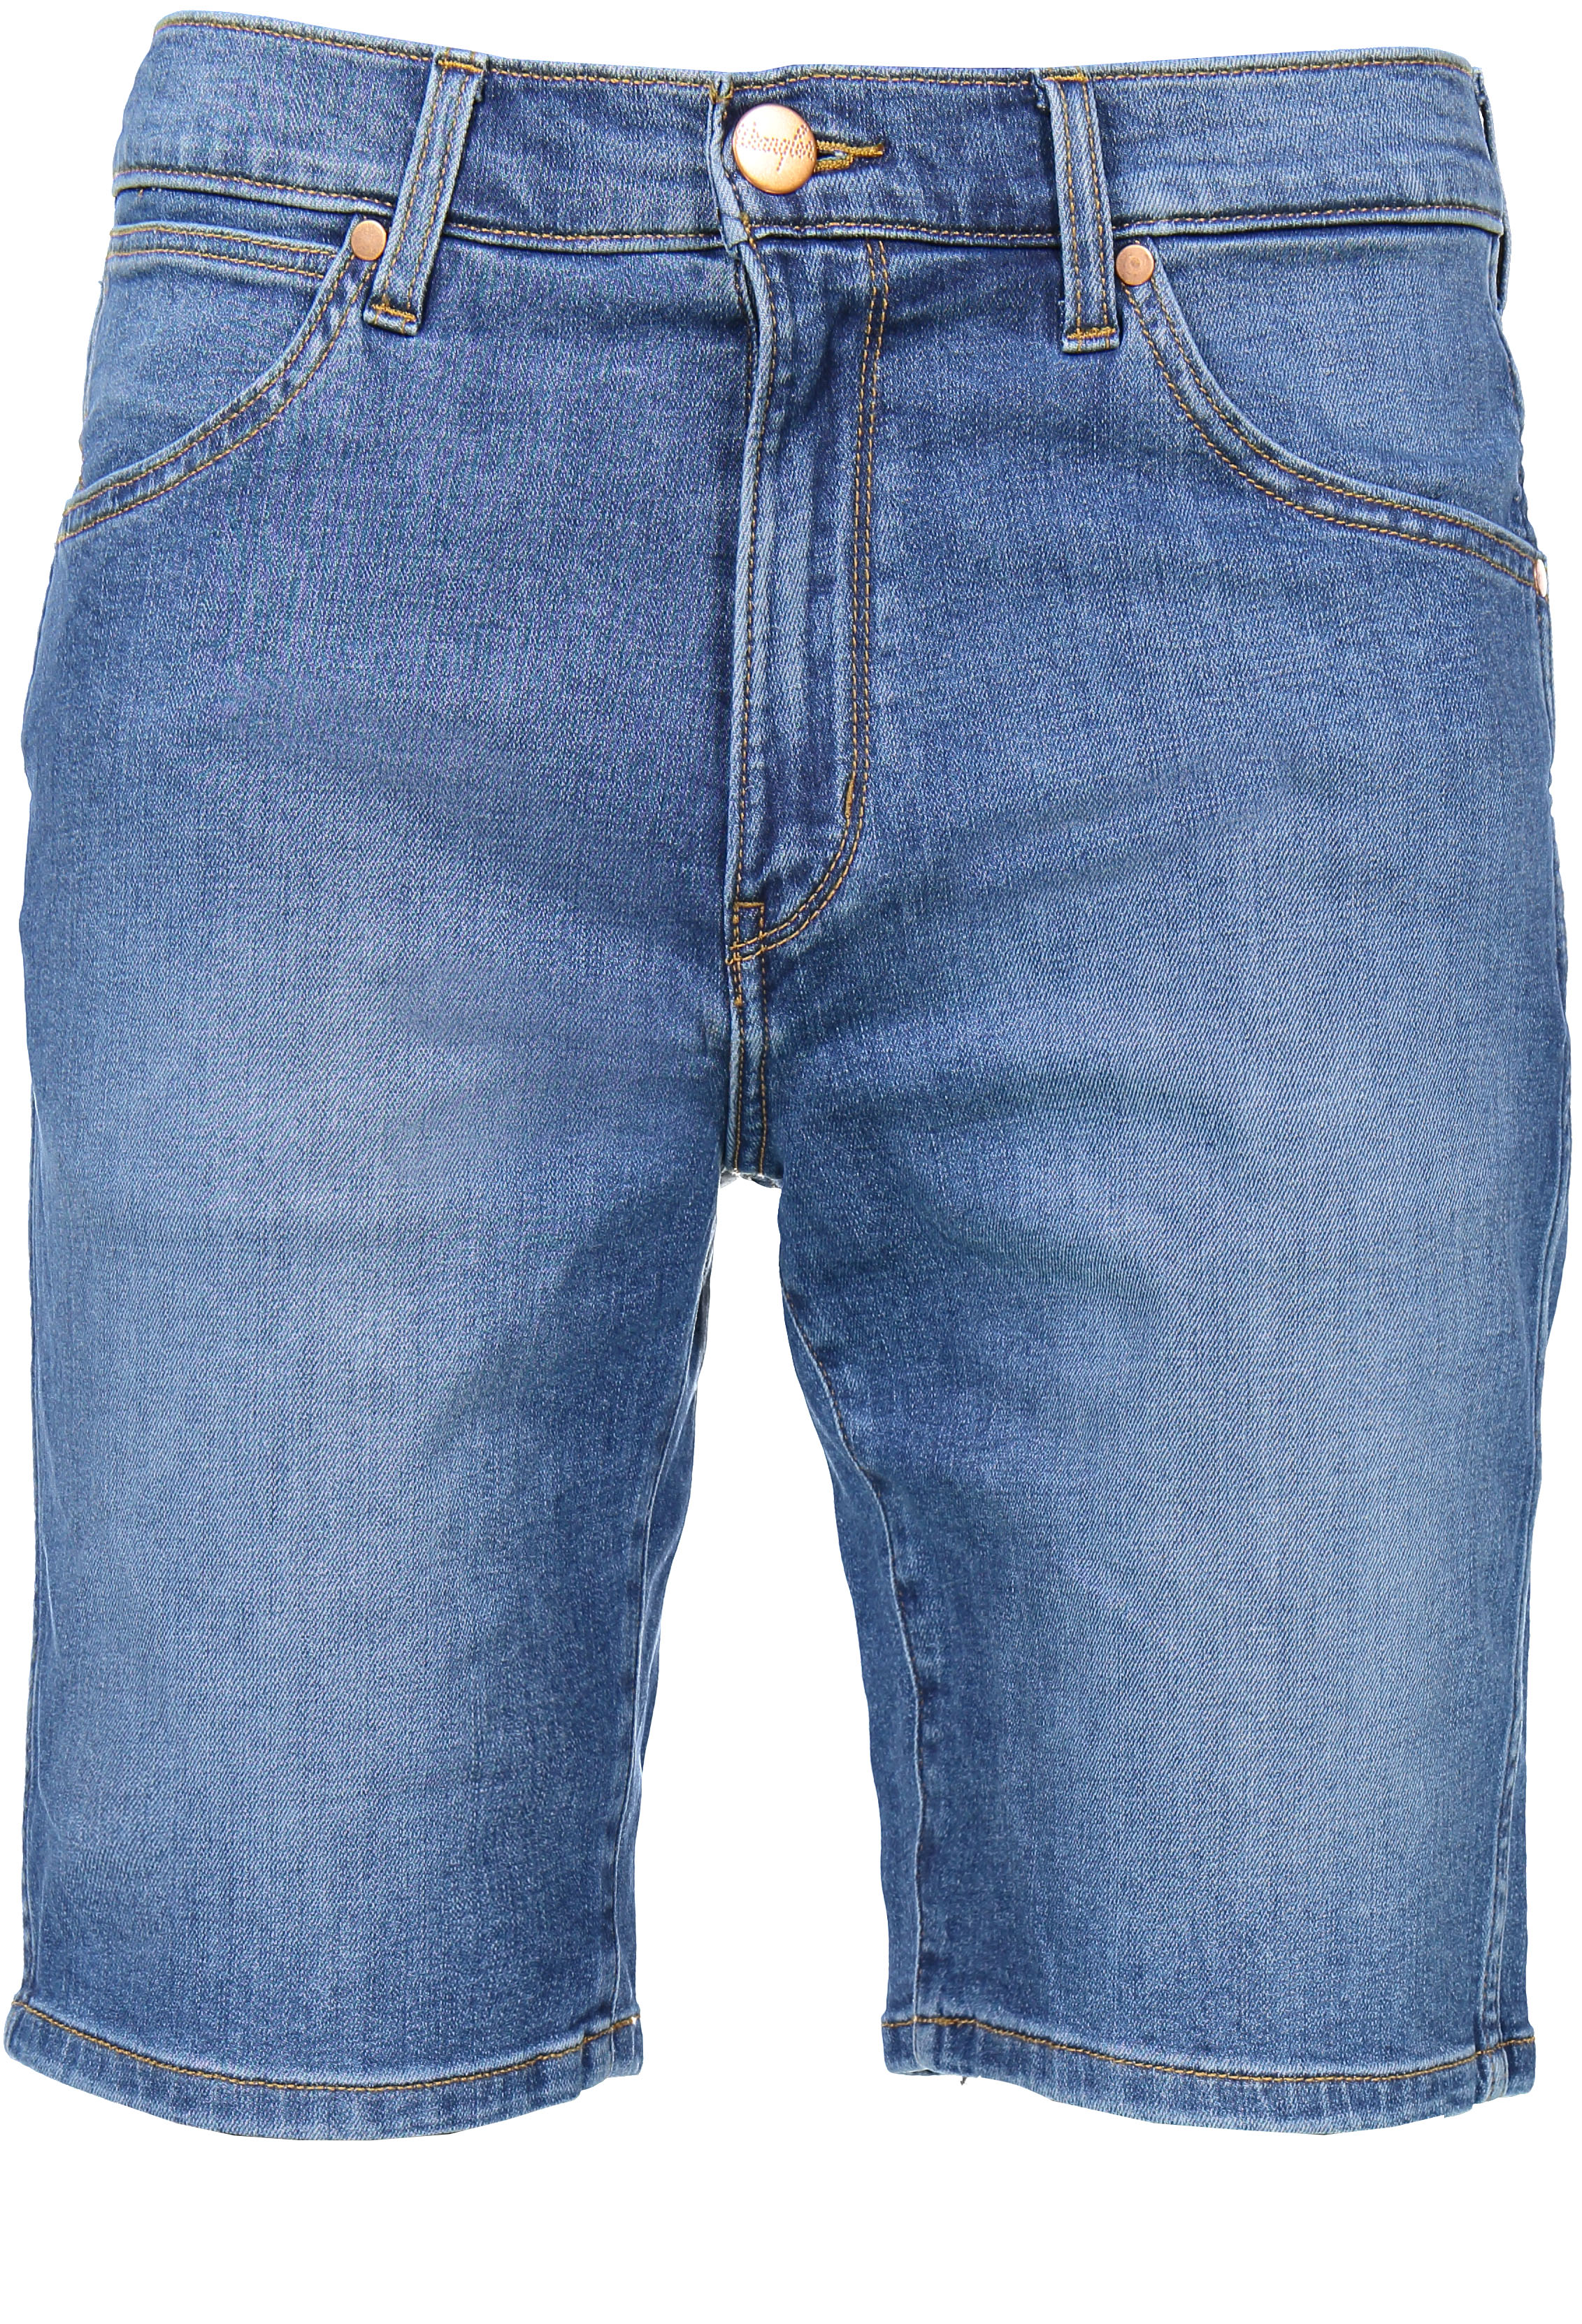 WRANGLER 5 POCKET SHORT blue dodge W14CFW886 | Shorts | Wrangler Jeans ...